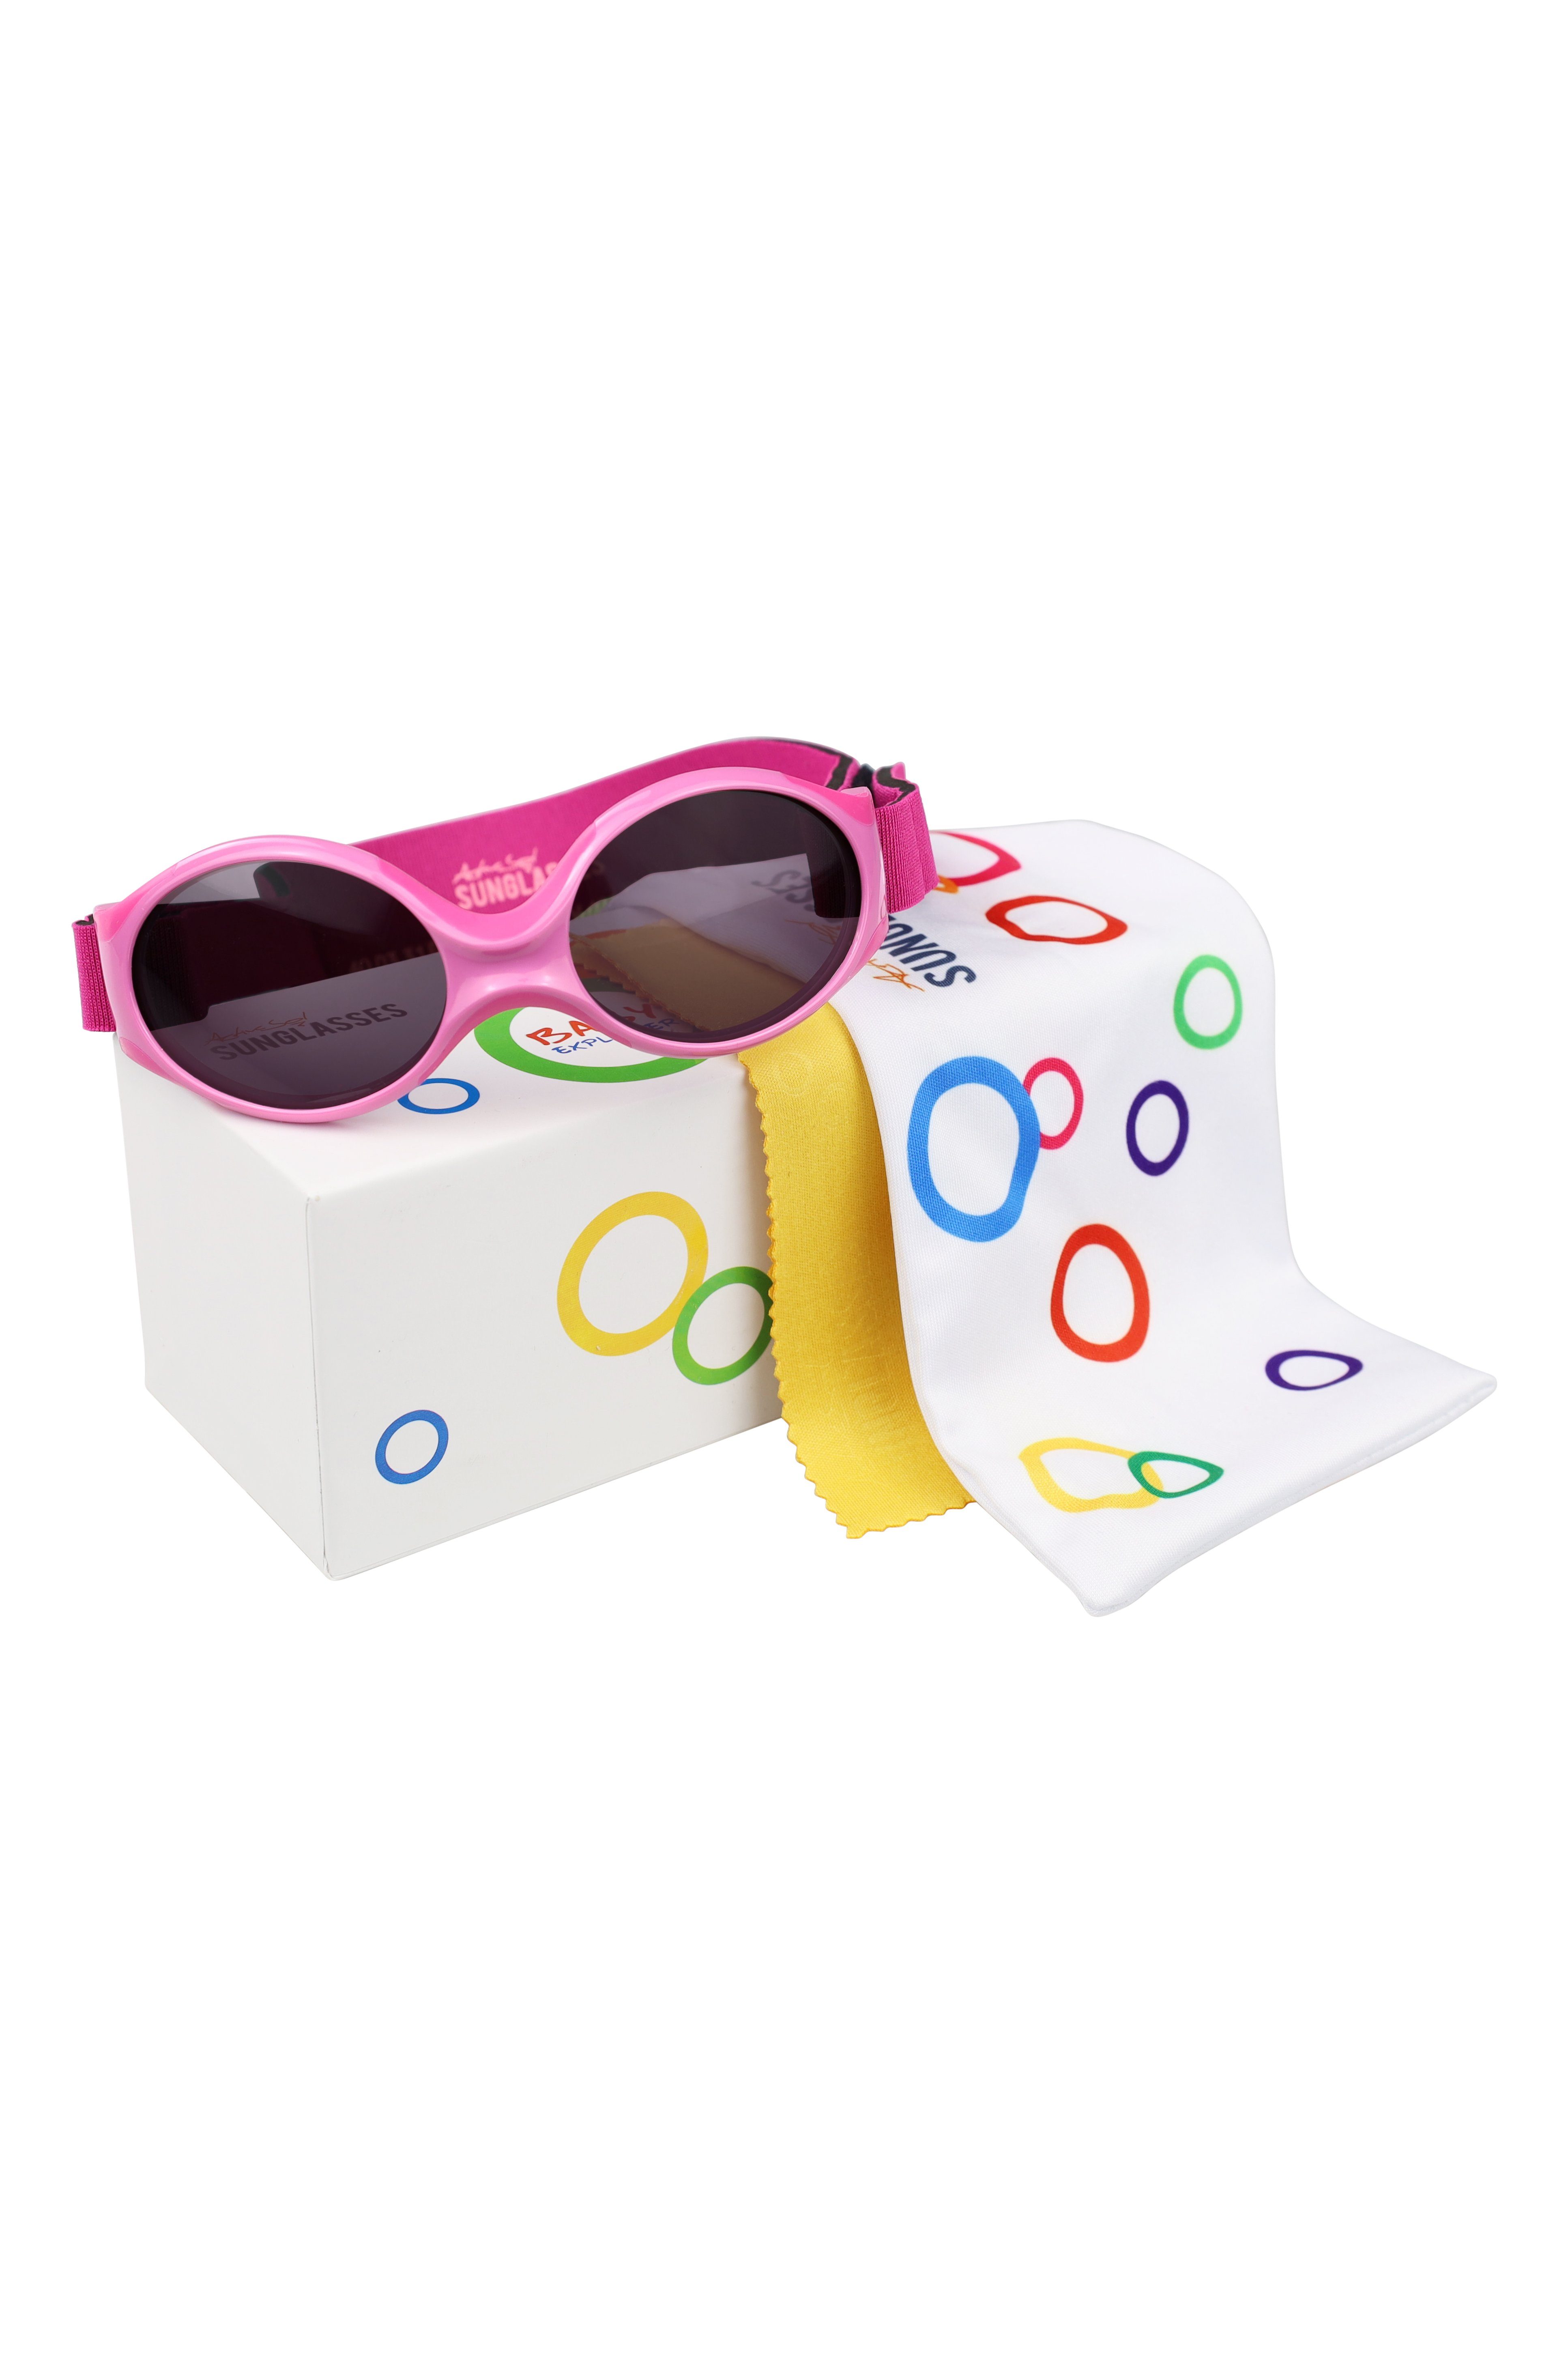 & ActiveSol - Sonnenbrillen Sonnenbrille verstellbar Baby 0-2 Lotuseffekt, supersoft, Mädchen, Polarisierte Gläser mit SUNGLASSES Blume premium pink EXPLORER, Jahre Jungen